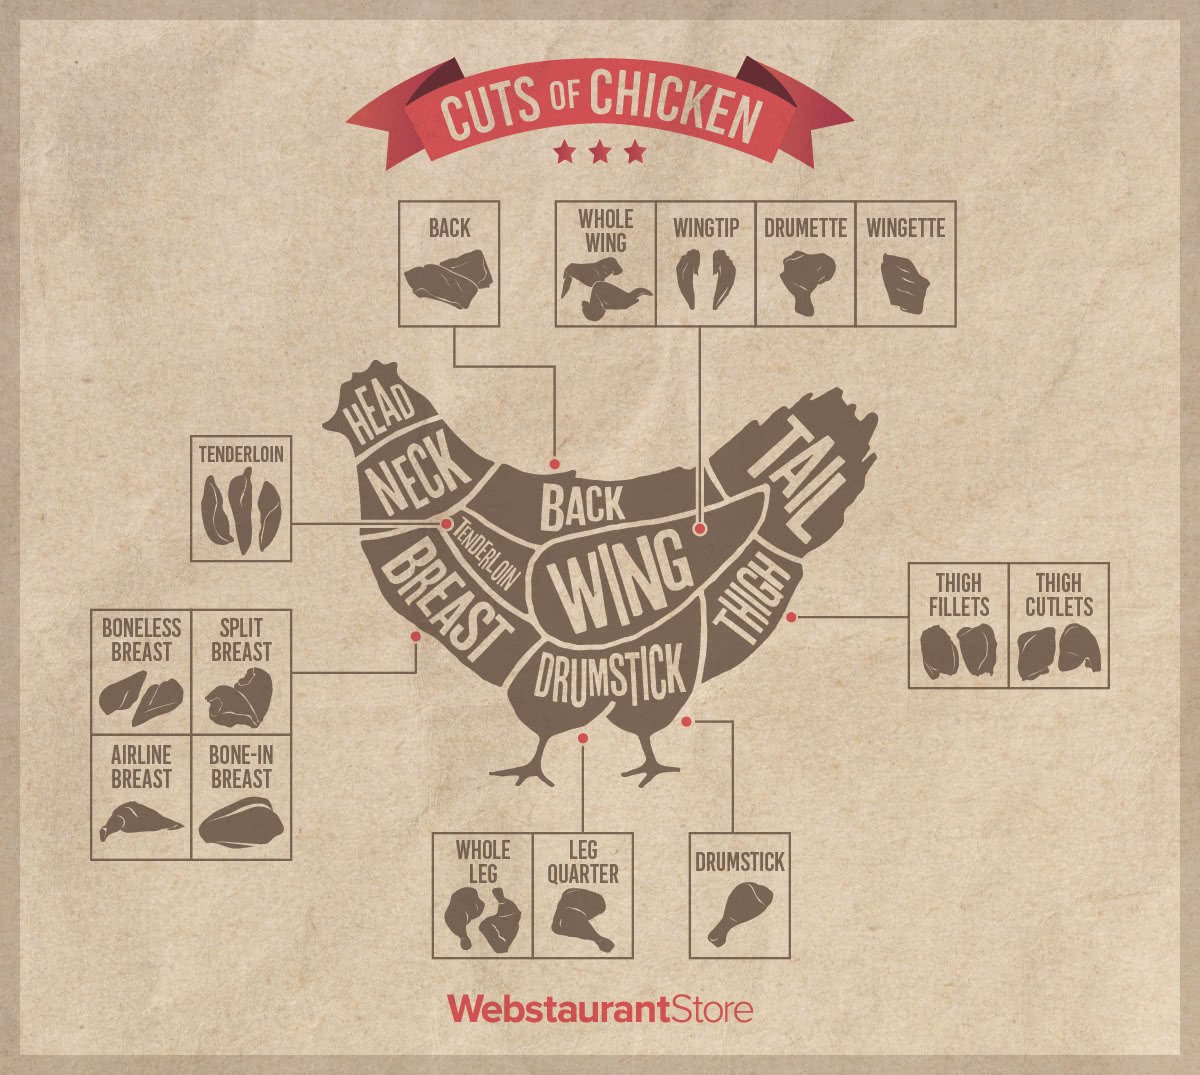 Chicken cuts diagram